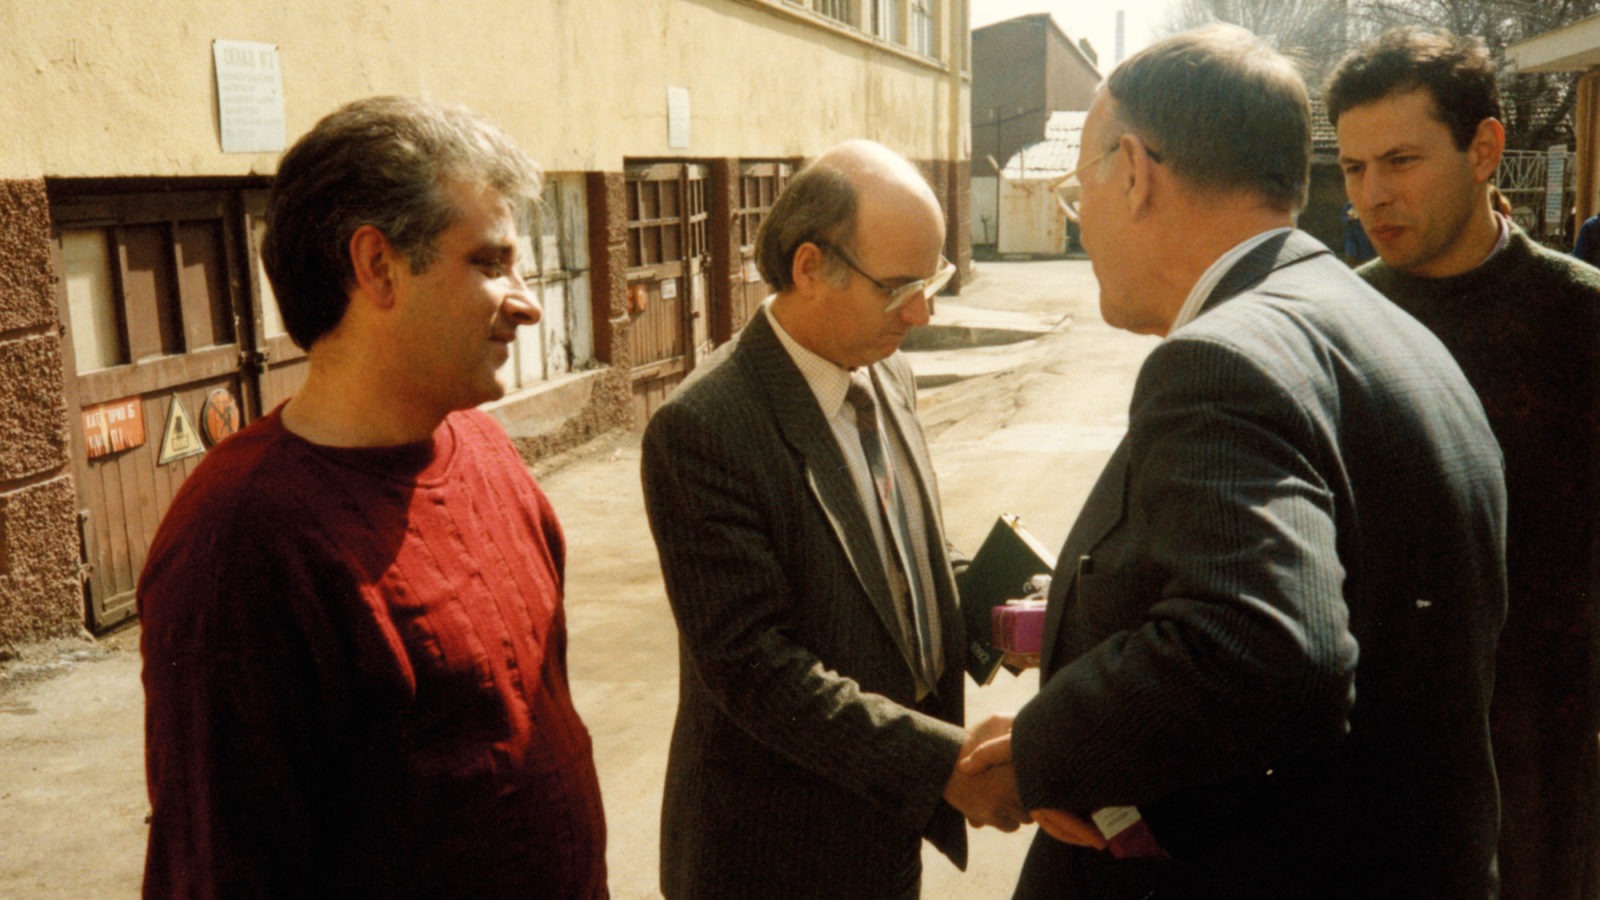 Ingvar Kamprad serre la main d’un homme en costume dans une zone industrielle, extérieur. Deux hommes assistent à l’échange.